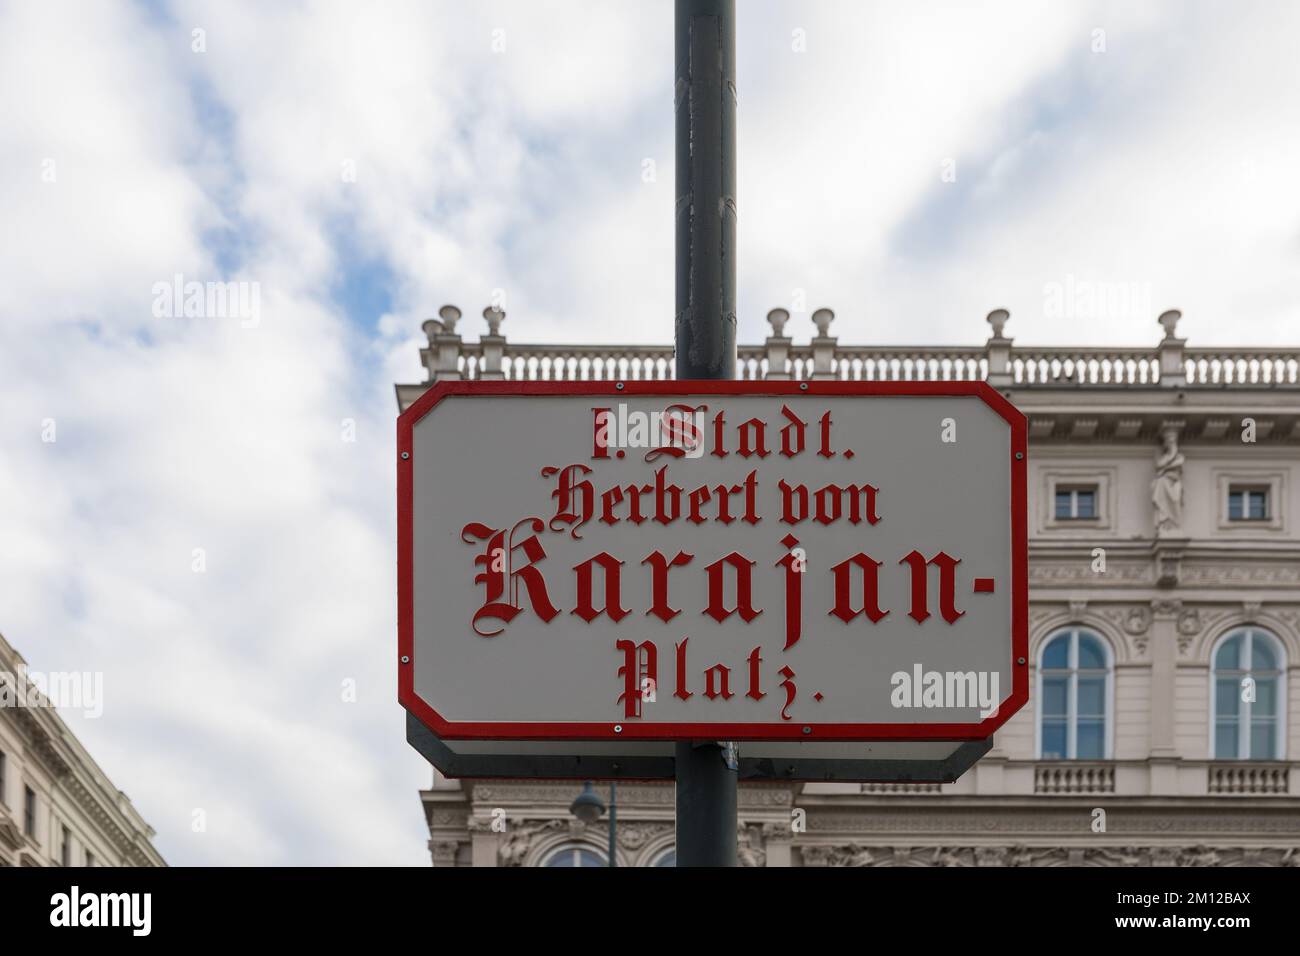 I. Stadt Herbert von Karajan Platz street name sign in Vienna, Austria Stock Photo